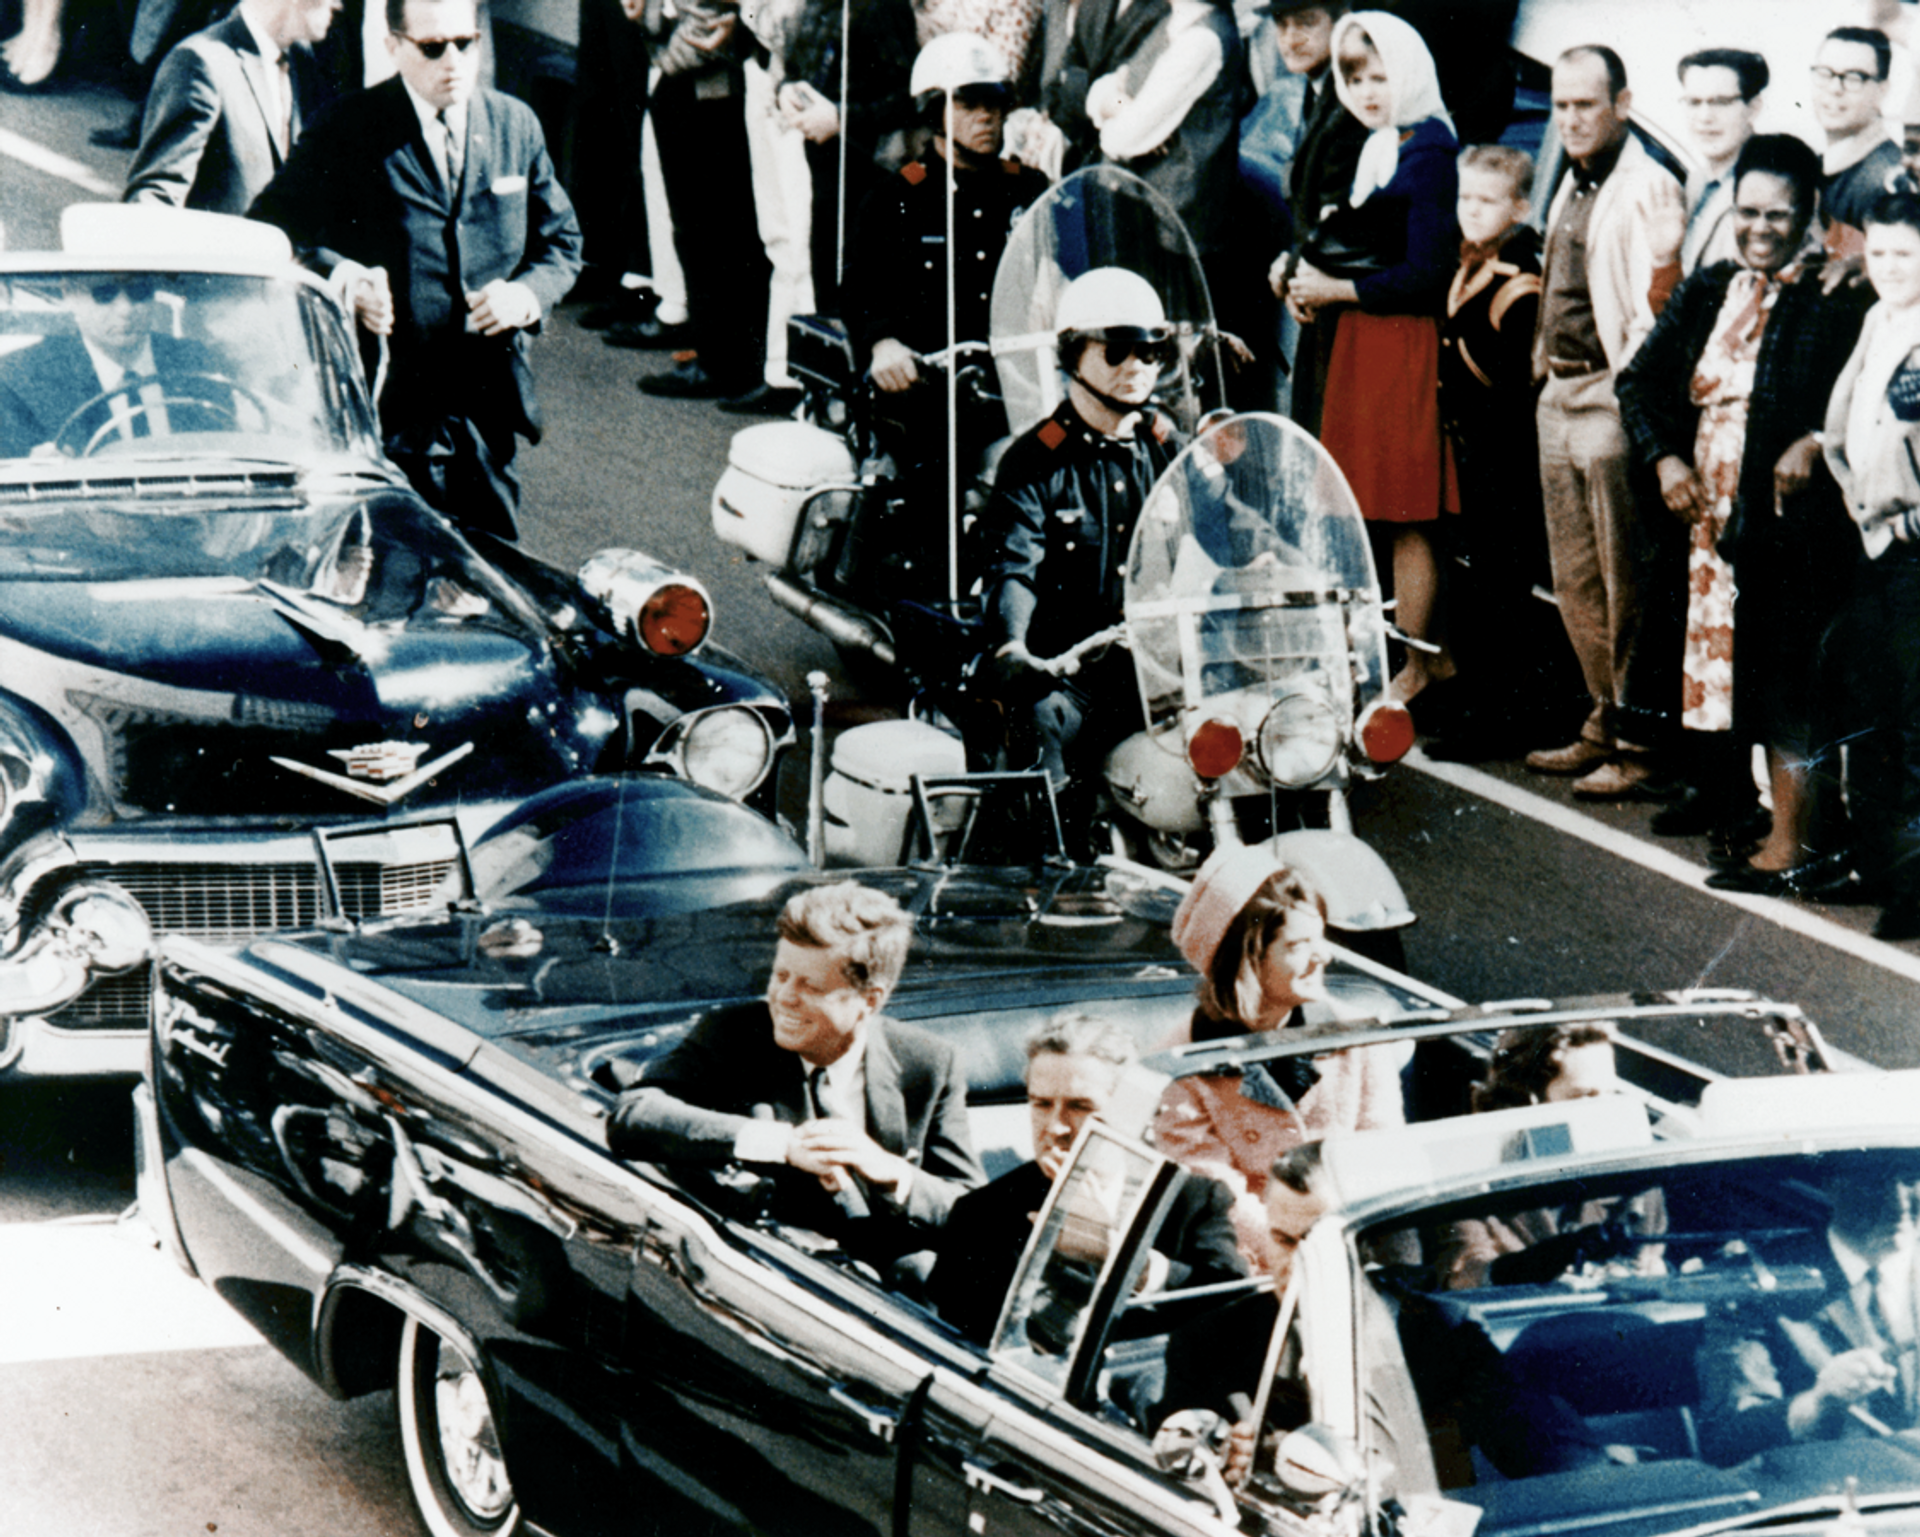 Predsednik SAD Džon F. Kenedi u predsedničkoj limuzini u Dalasu 1963. nekoliko minuta pre atentata. U vozilu su i prva dama Džeki Kenedi, governer Teksasa Džon Konali i njegova žena Neli. - Sputnik Srbija, 1920, 20.12.2021